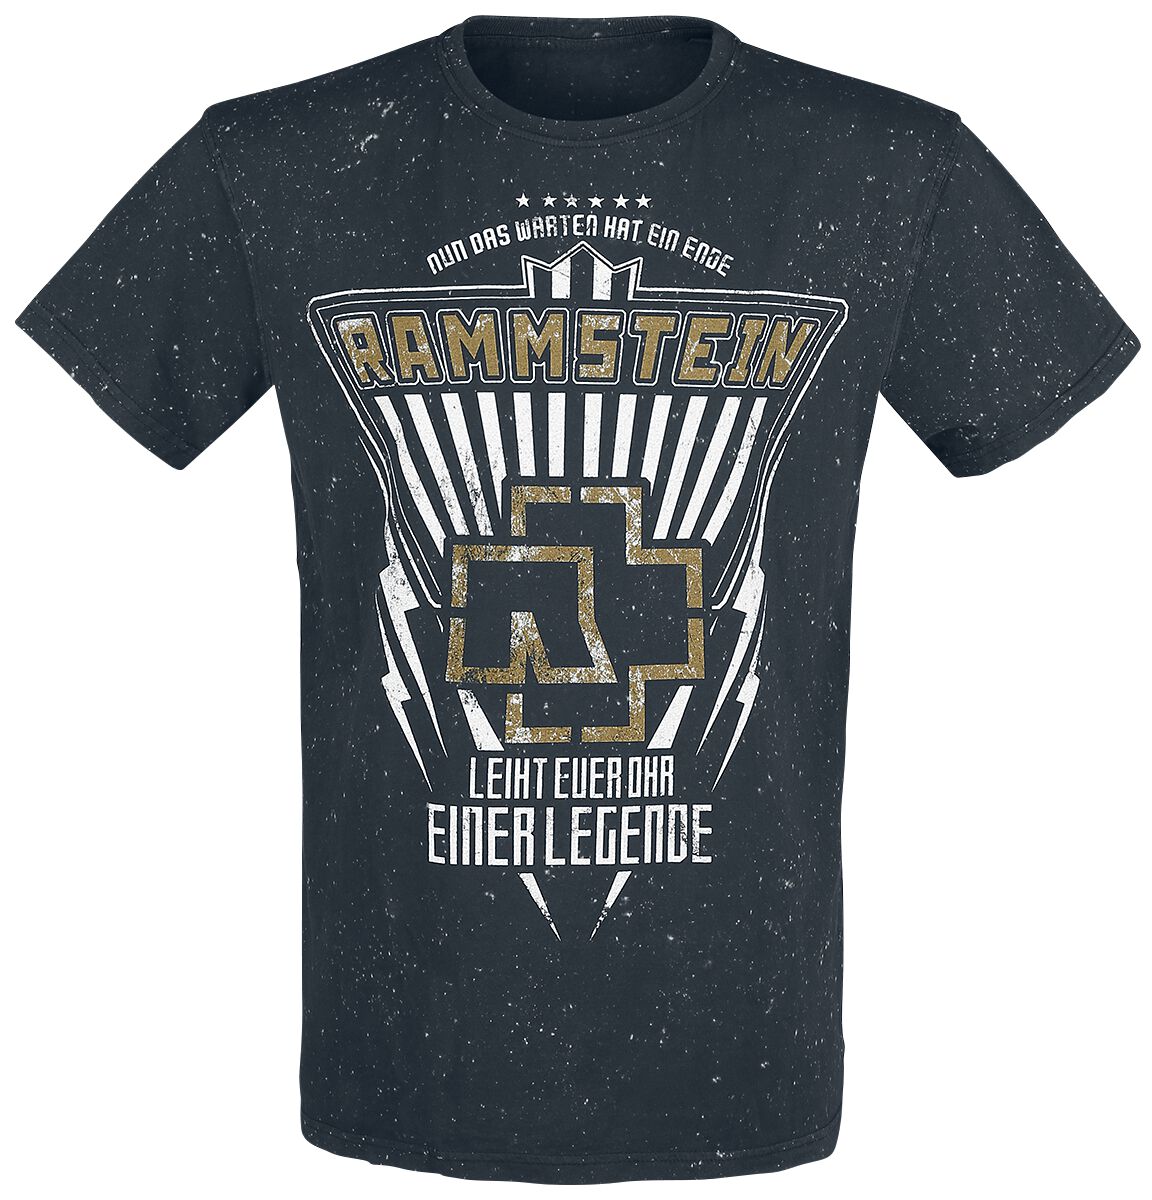 Rammstein T-Shirt - Legende - S bis 4XL - für Männer - Größe 3XL - schwarz  - Lizenziertes Merchandise!